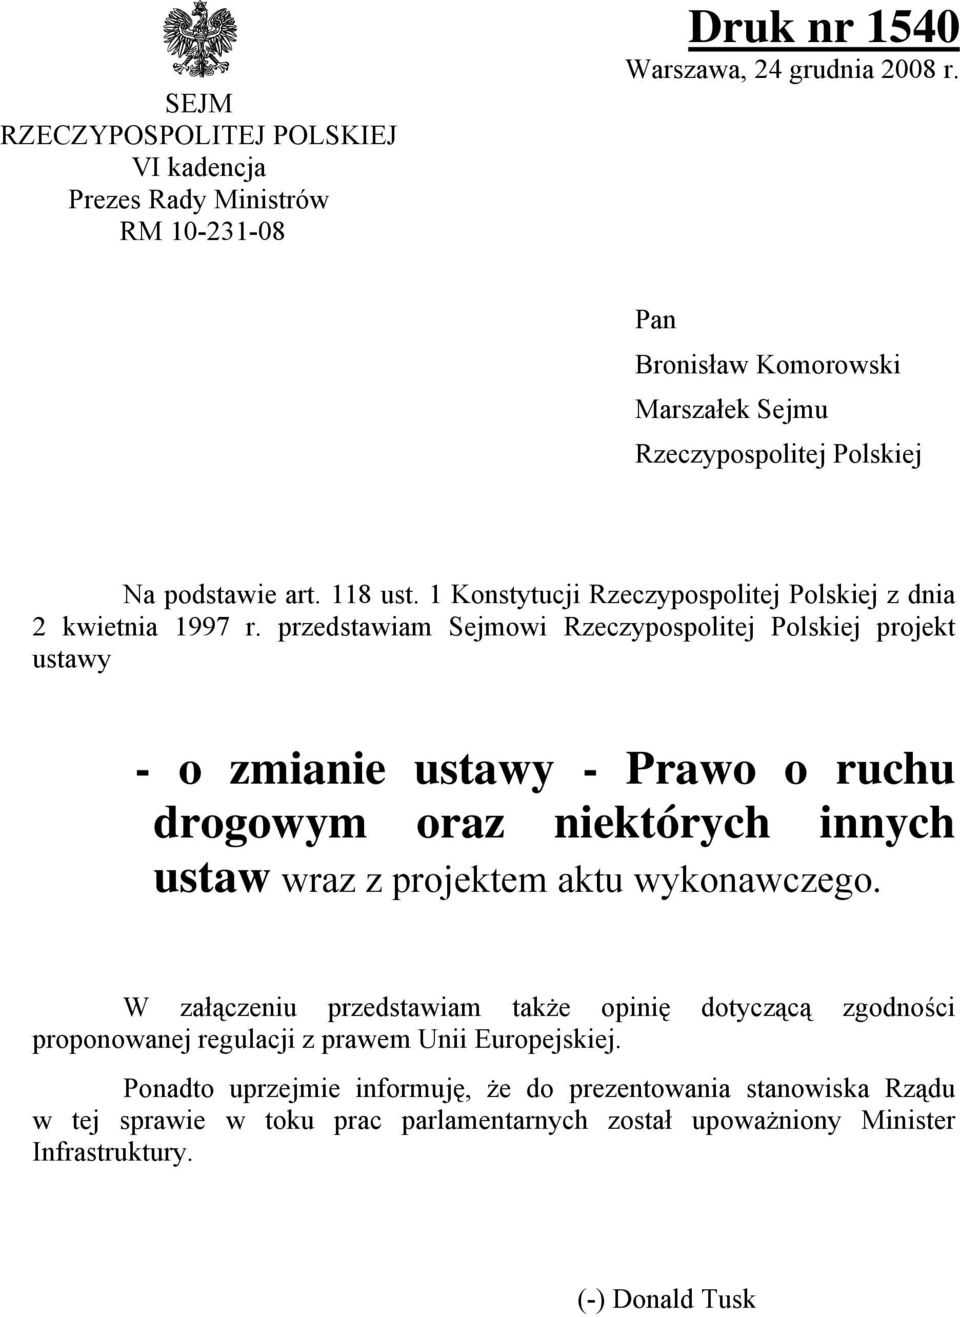 przedstawiam Sejmowi Rzeczypospolitej Polskiej projekt ustawy - o zmianie ustawy - Prawo o ruchu drogowym oraz niektórych innych ustaw wraz z projektem aktu wykonawczego.